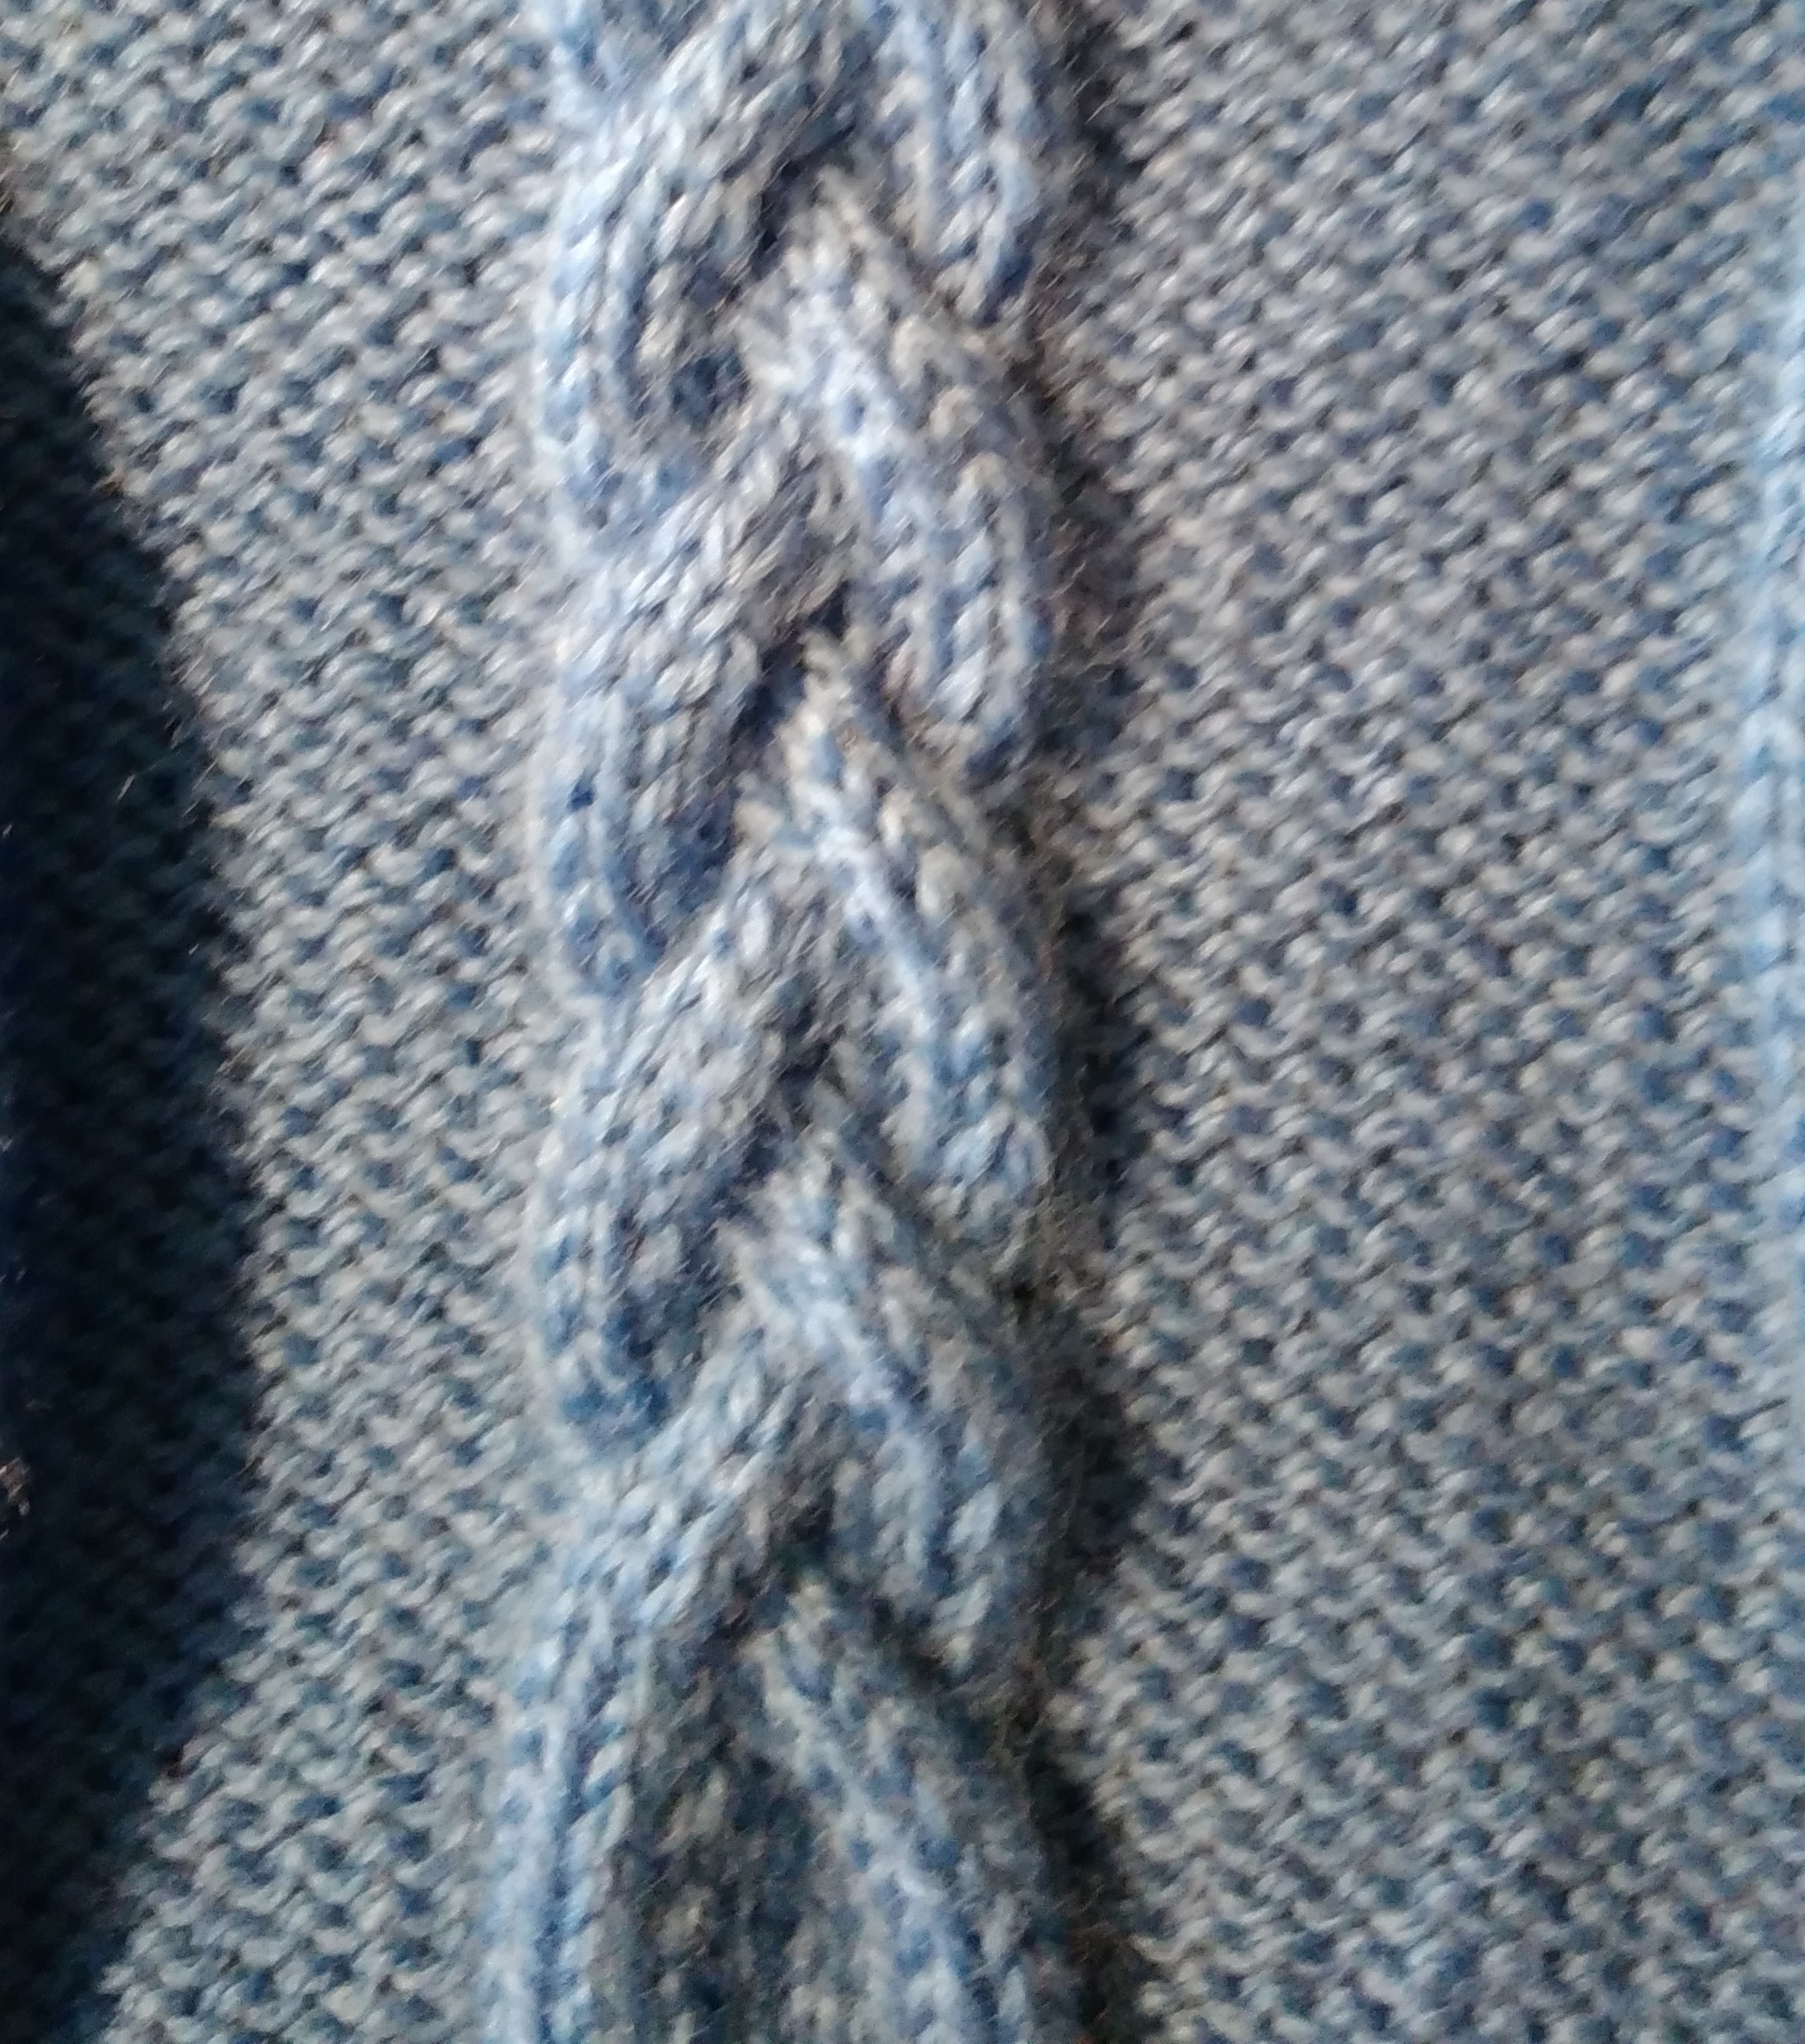 DK Knitting Patterns Free